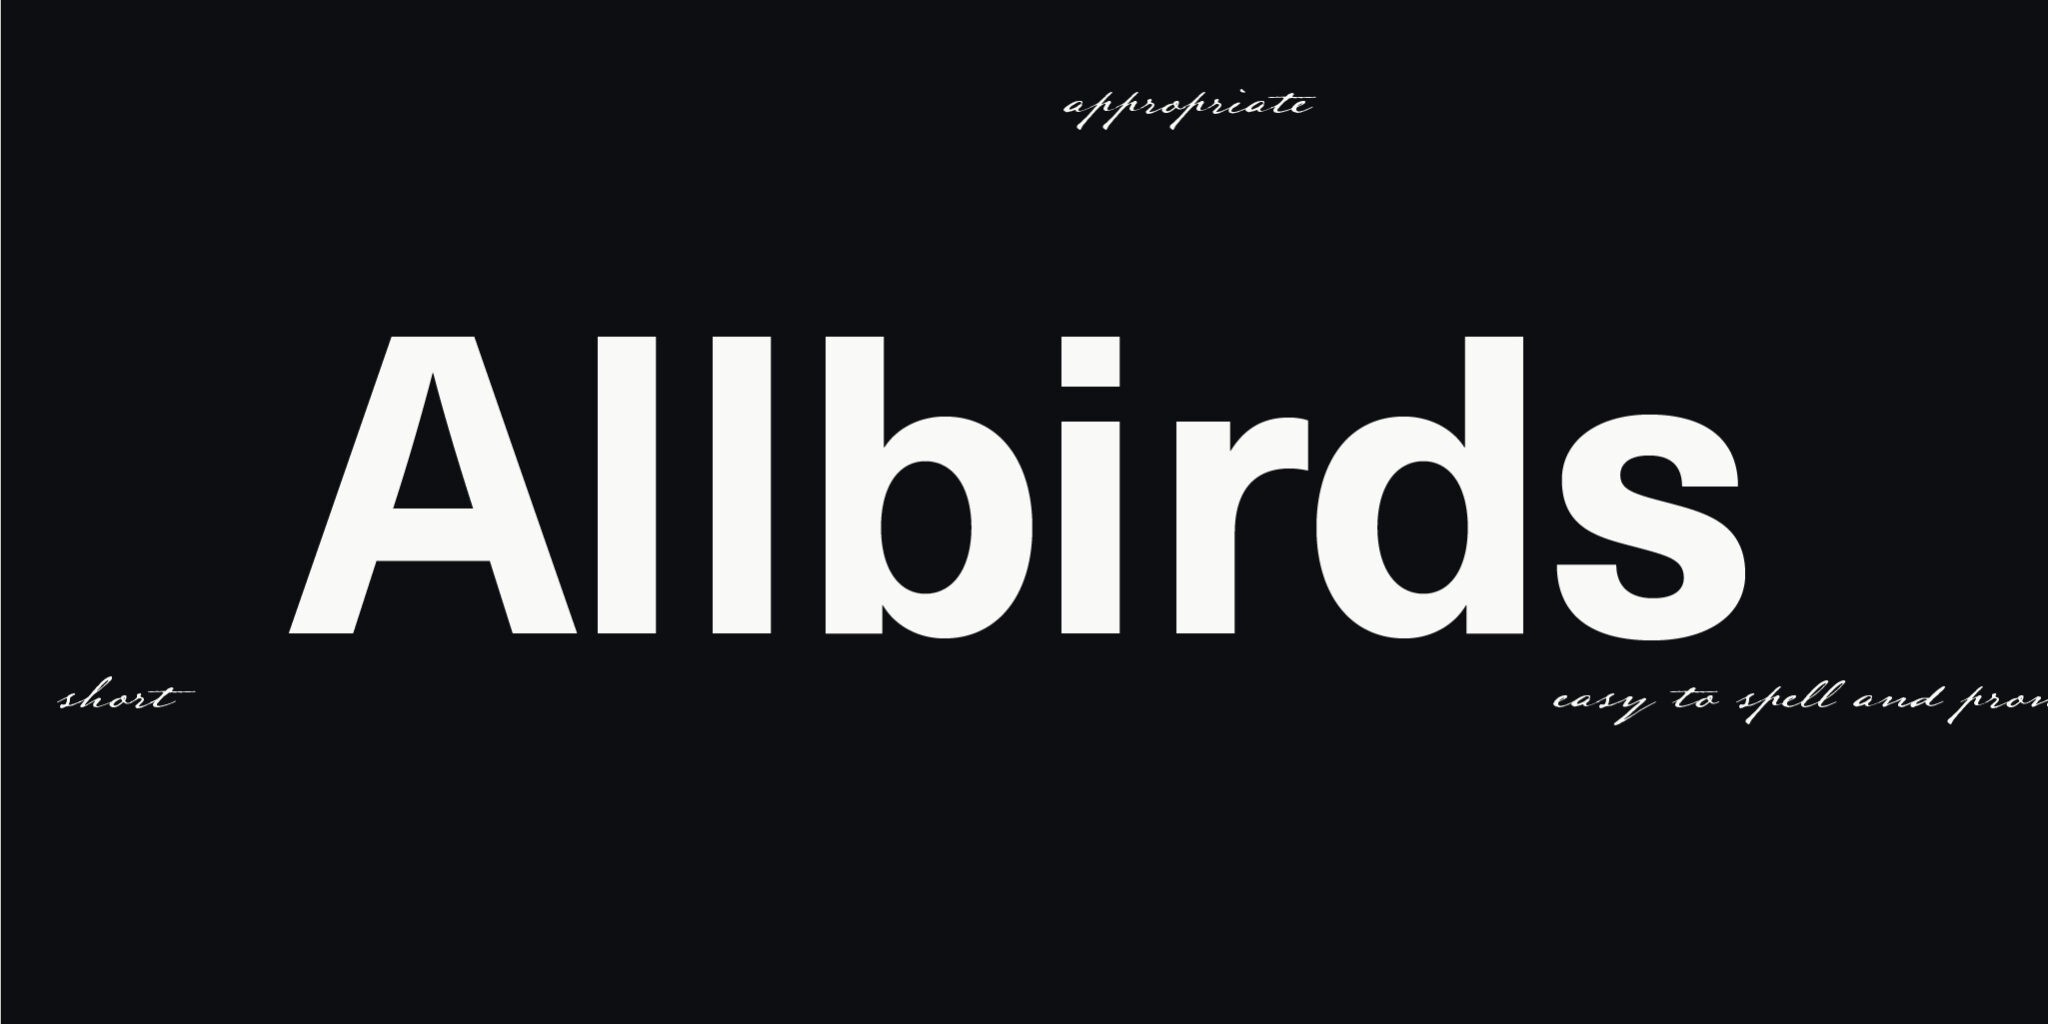 Das Bild zeigt den Markennamen 'Allbirds' und in kleiner Typografie die Attribute, die einen guten Namen ausmachen